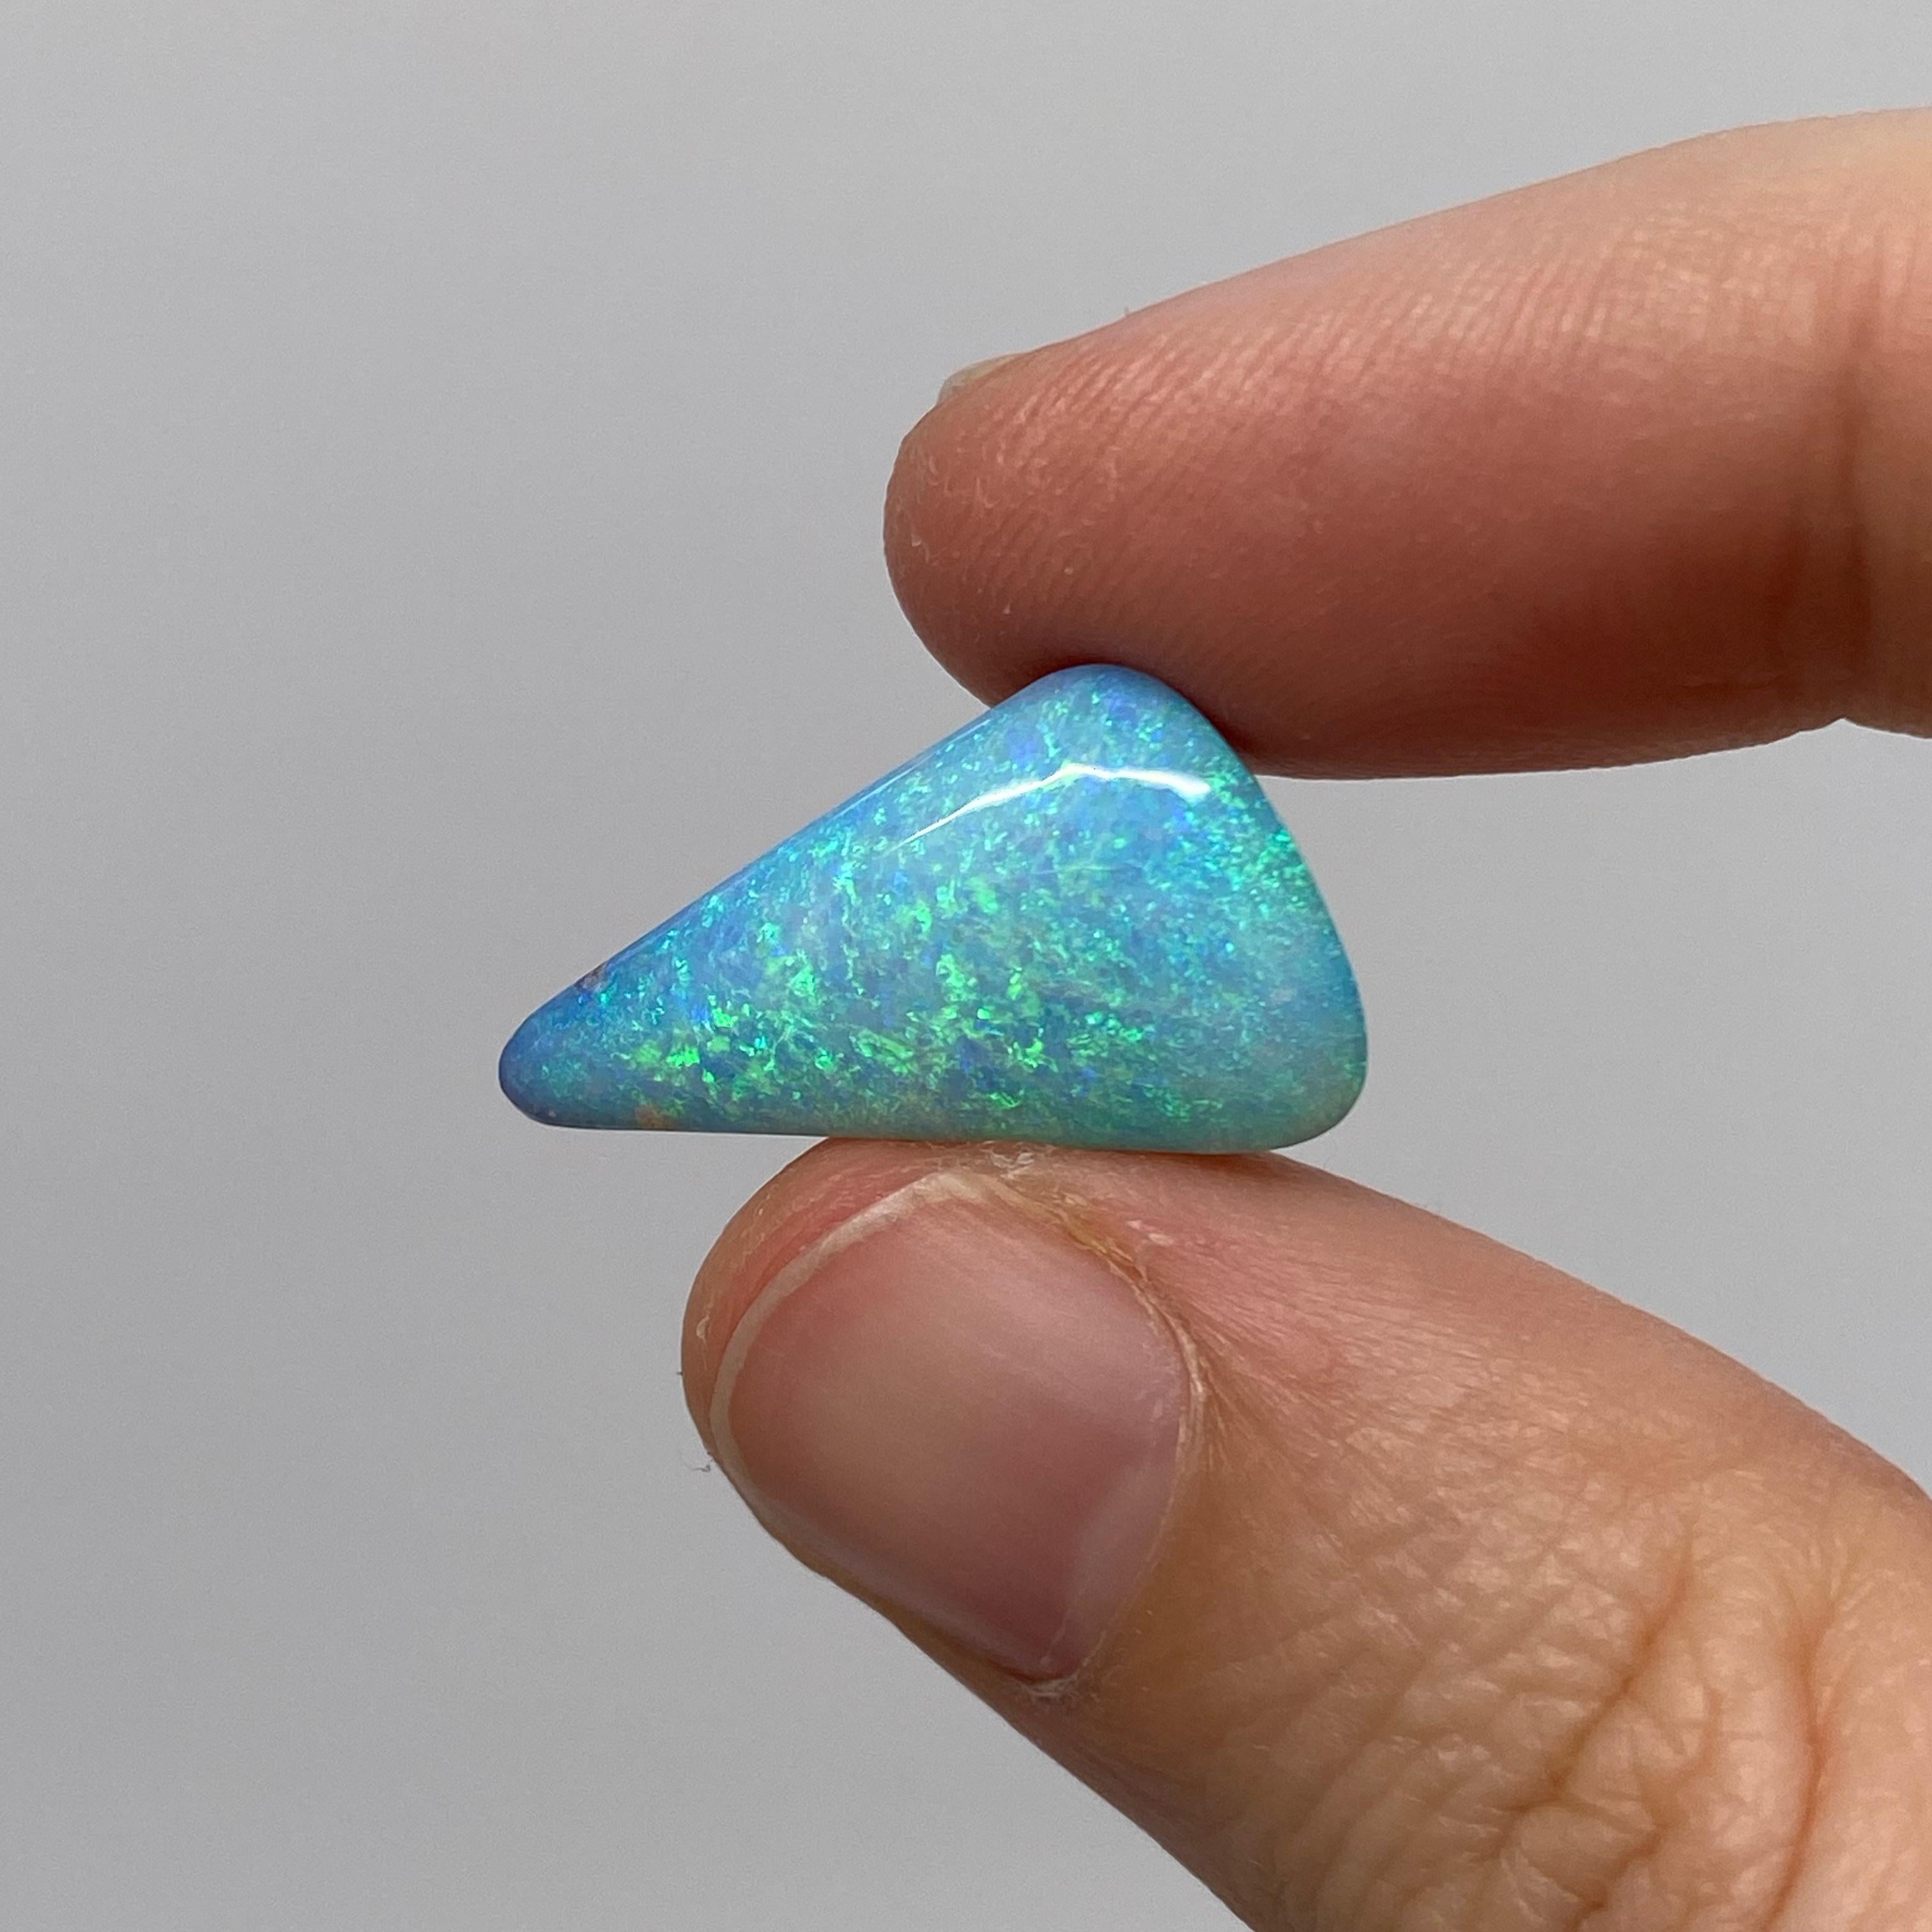 Cette opale naturelle solide de forme libre a été extraite dans l'ouest du Queensland, en Australie, par une opératrice de mines d'opales. Il présente de superbes couleurs d'océan tropical, dont le turquoise et l'aigue-marine. Il est très brillant